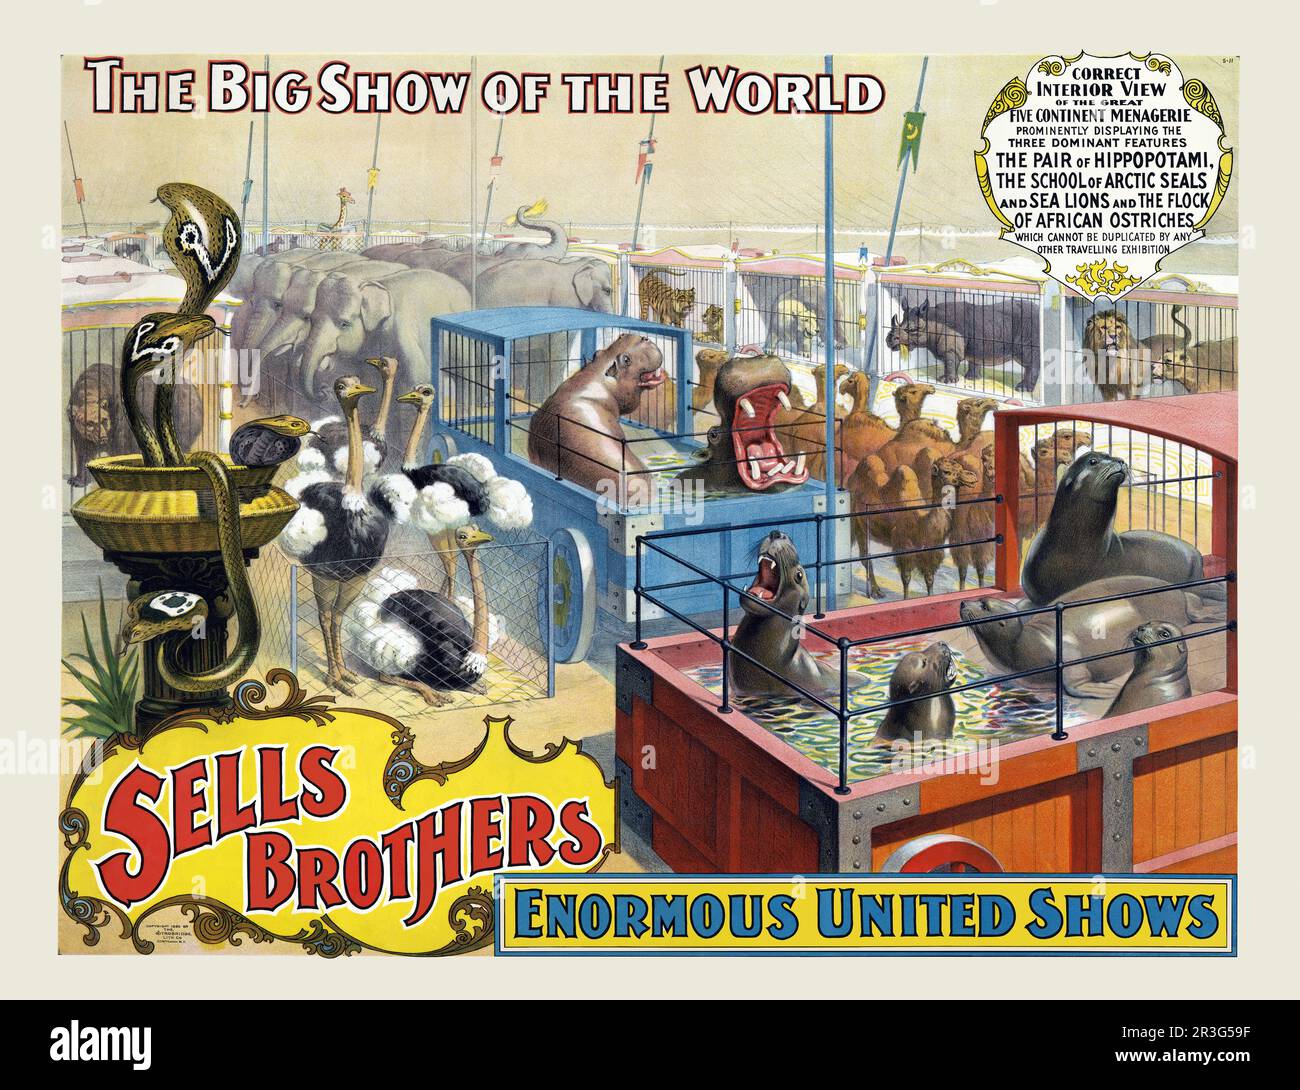 Vintage vend des affiches de cirque Brothers montrant divers animaux sauvages dans des cages, vers 1895. Banque D'Images